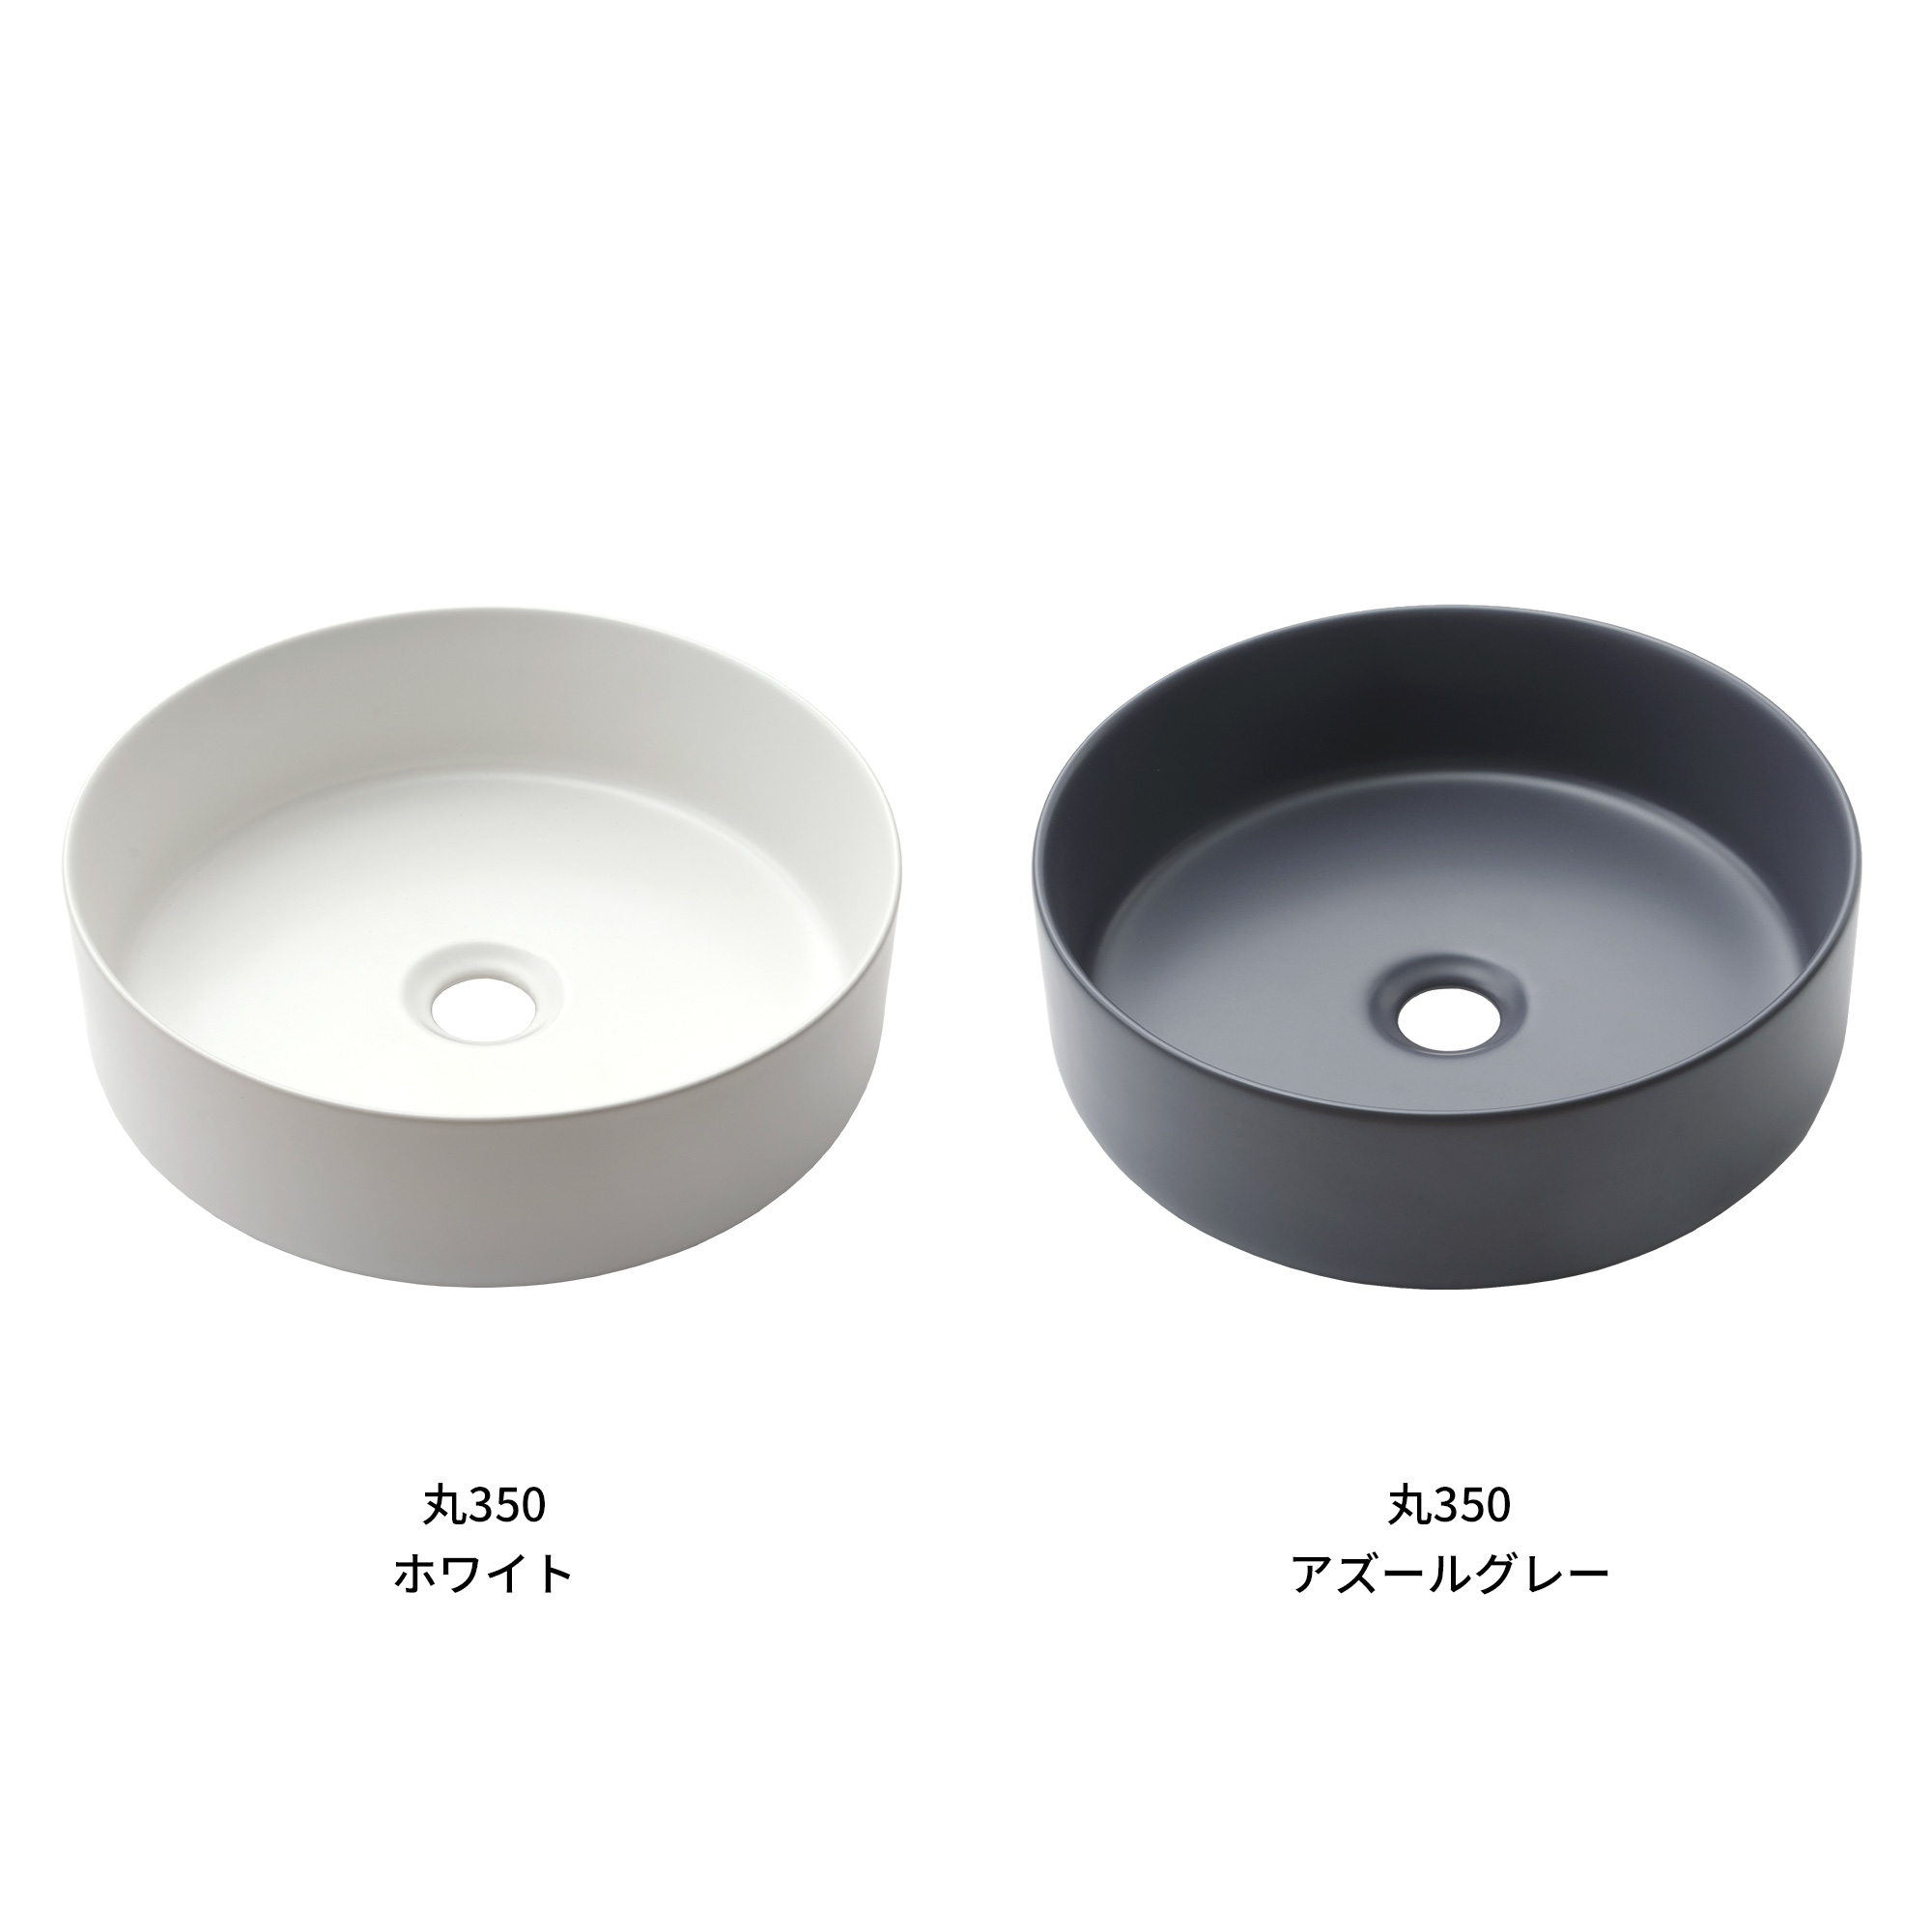 木の手洗いカウンター 陶器の手洗い器 丸350 立水栓用 KB-PR013-04-G165 マットで空間になじみやすい質感の手洗い器です。洗面器としても使えるサイズです